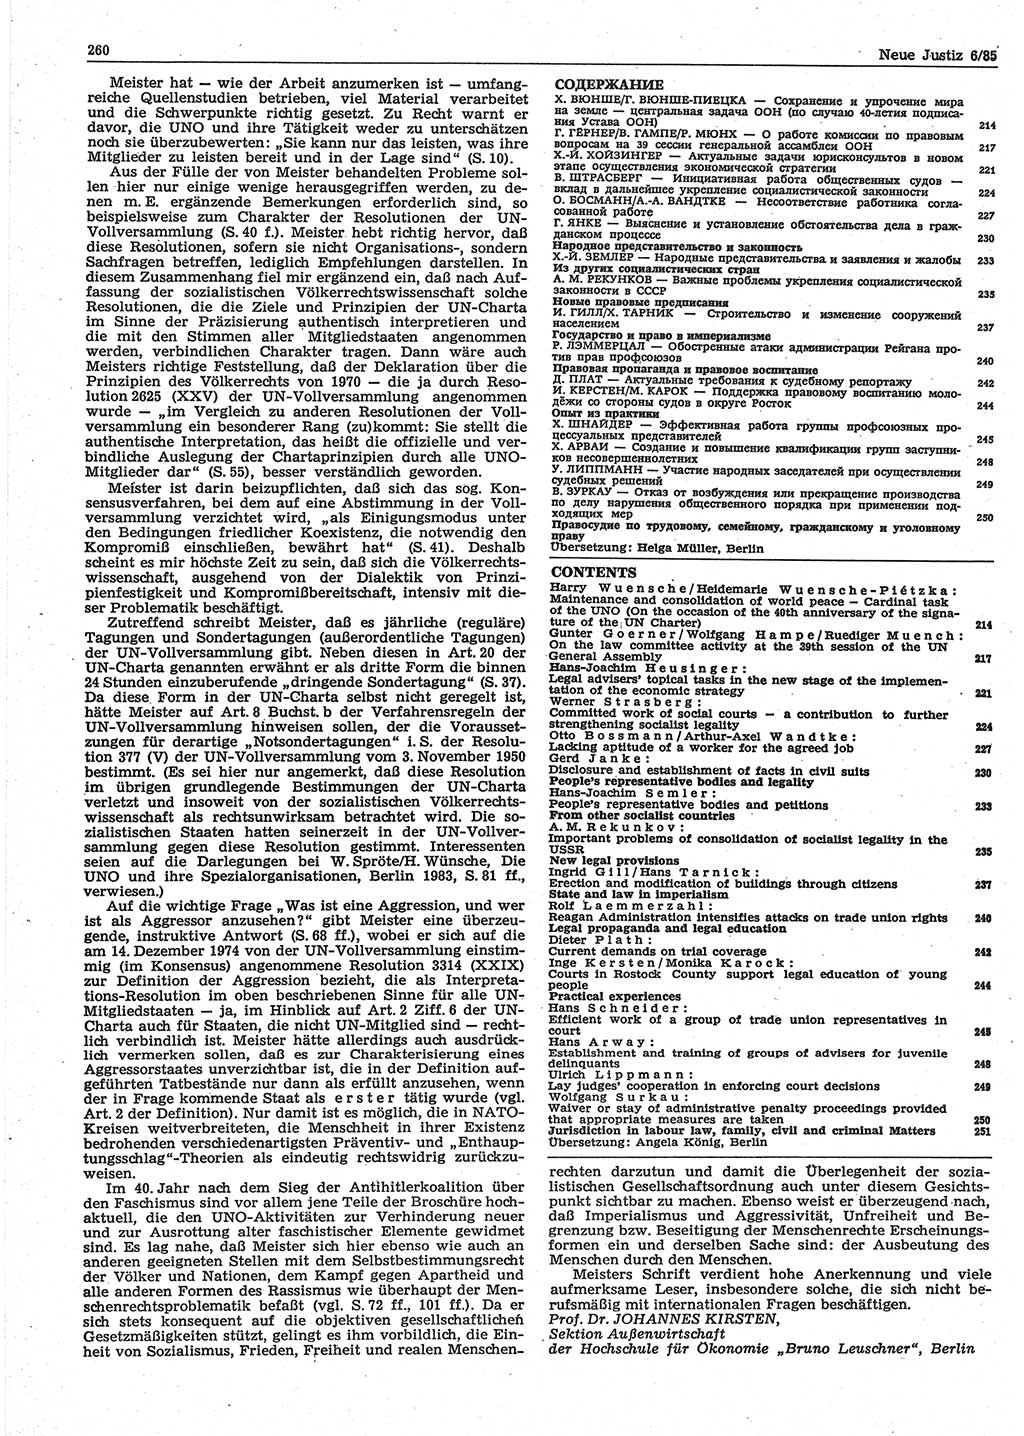 Neue Justiz (NJ), Zeitschrift für sozialistisches Recht und Gesetzlichkeit [Deutsche Demokratische Republik (DDR)], 39. Jahrgang 1985, Seite 260 (NJ DDR 1985, S. 260)